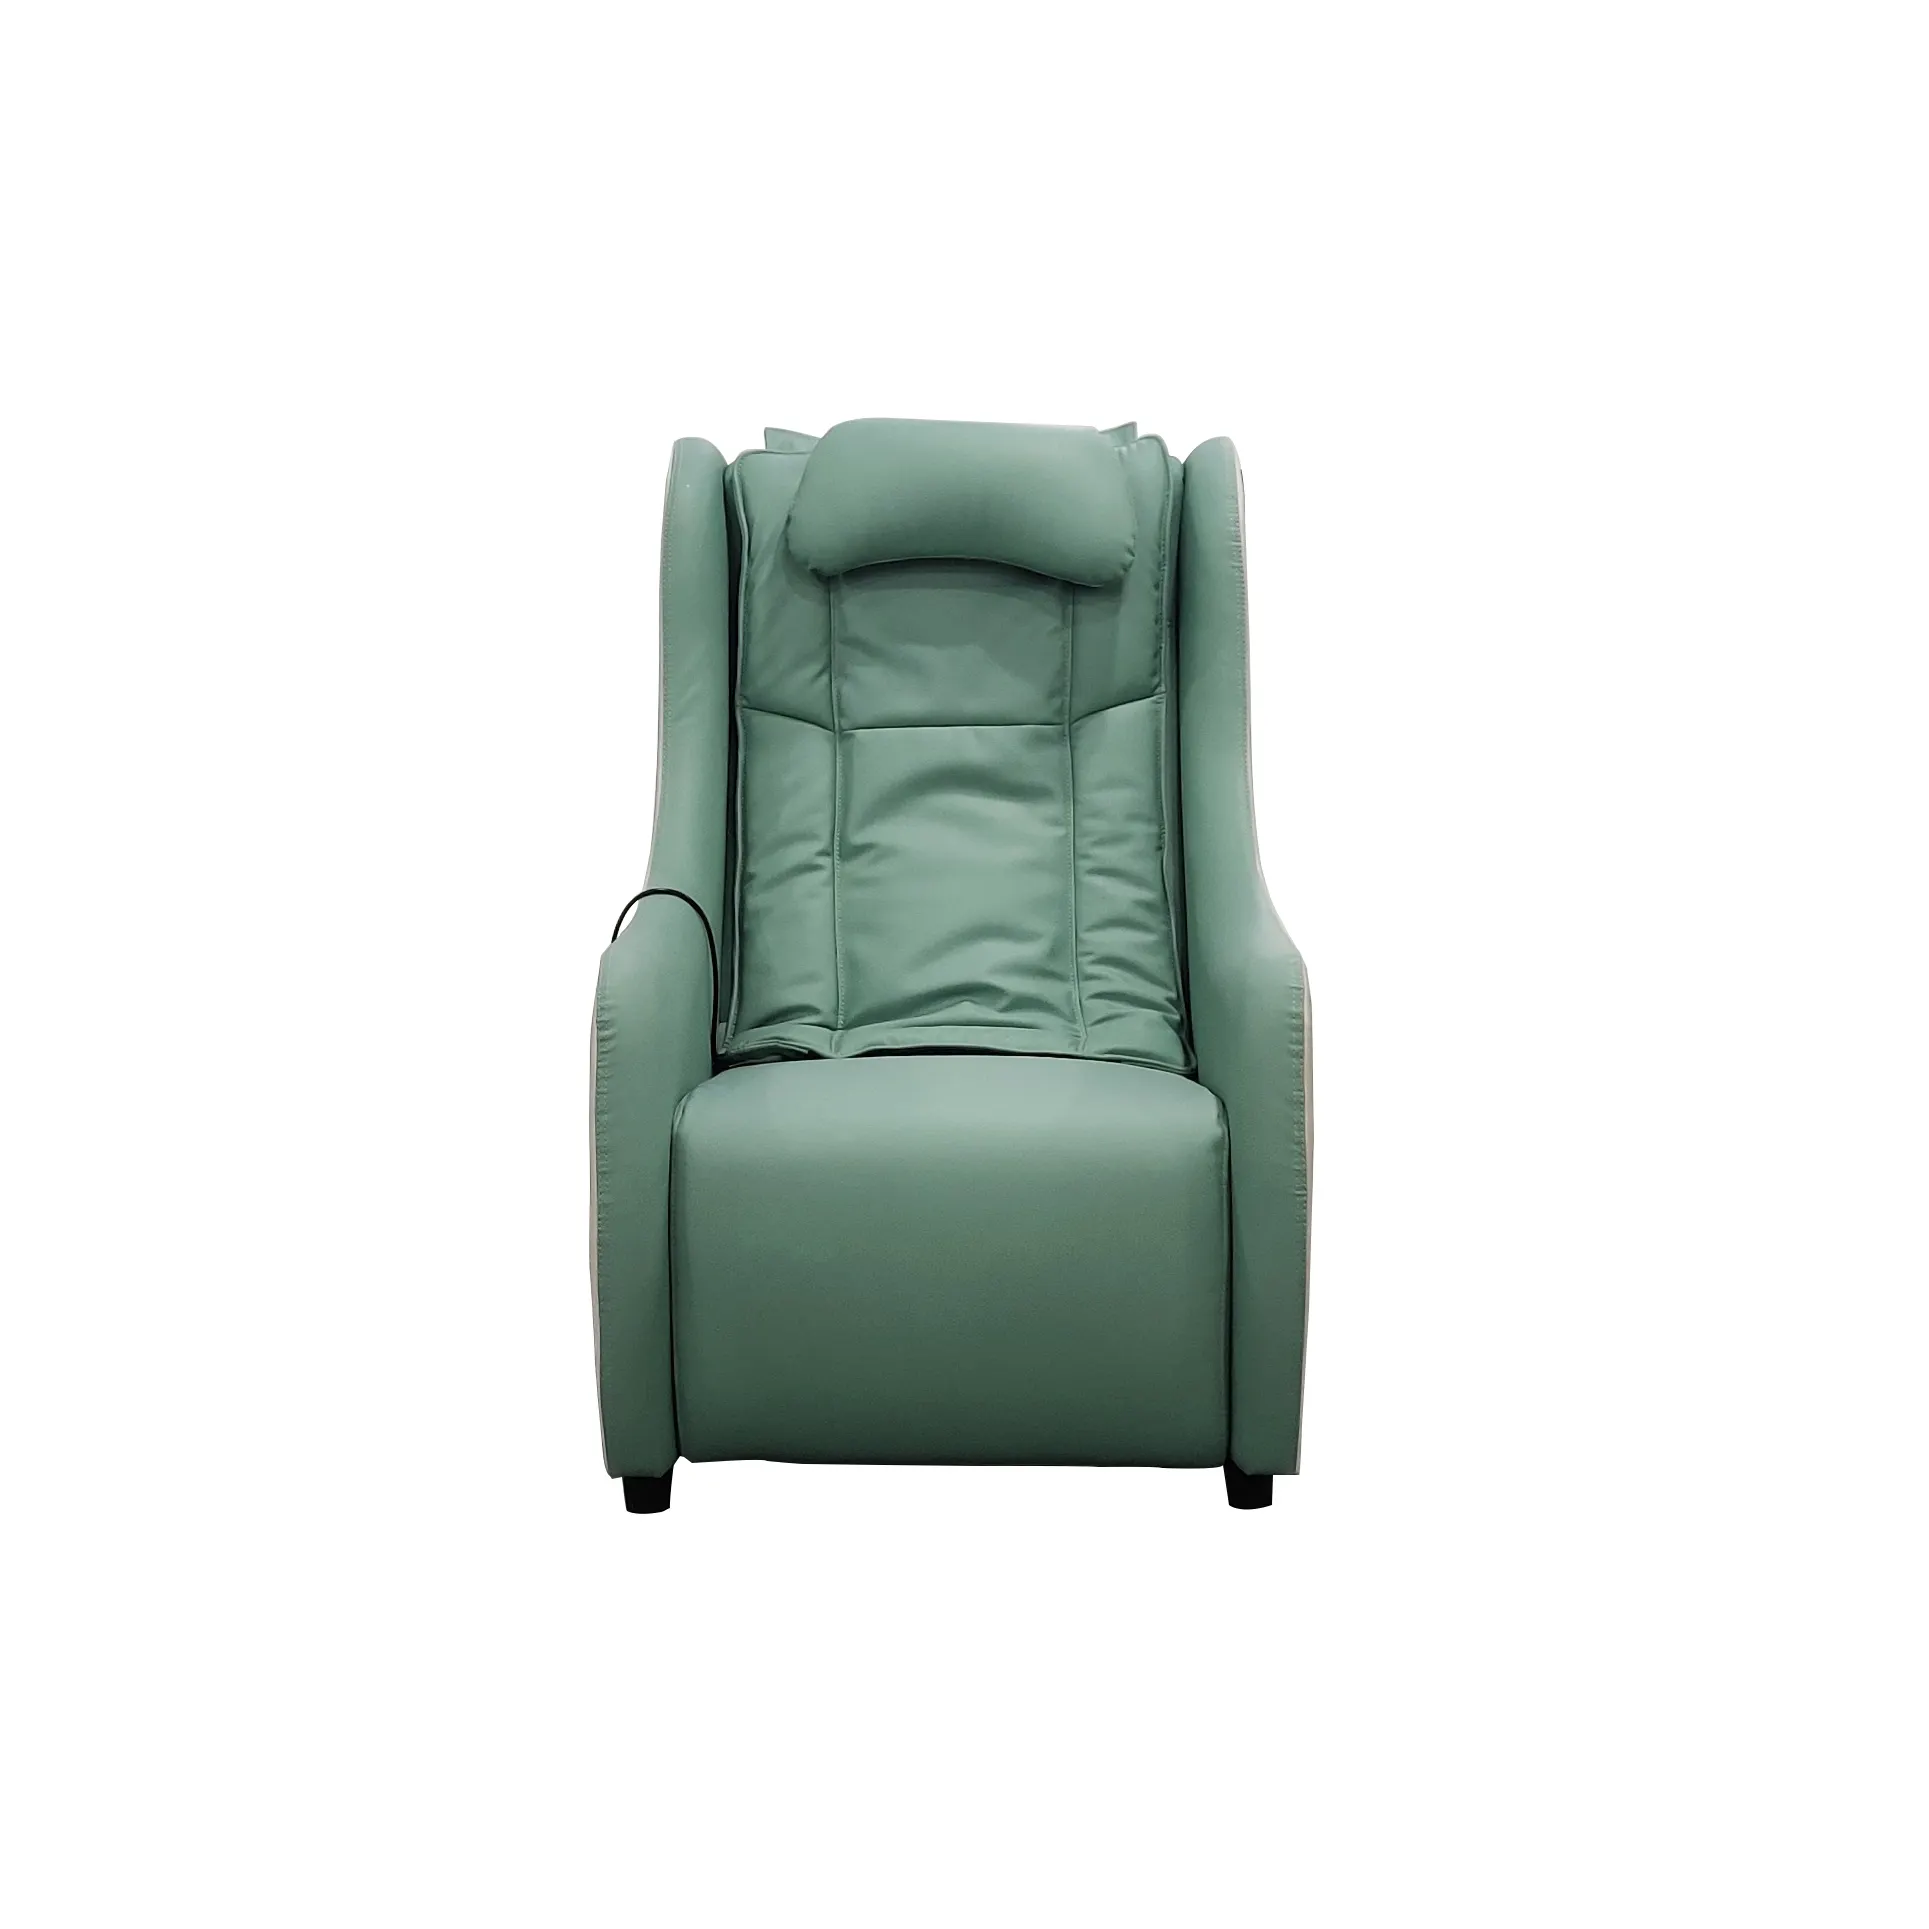 European Style Recliner Sofa Chair Stoff Manuelle Liege Einsitzer